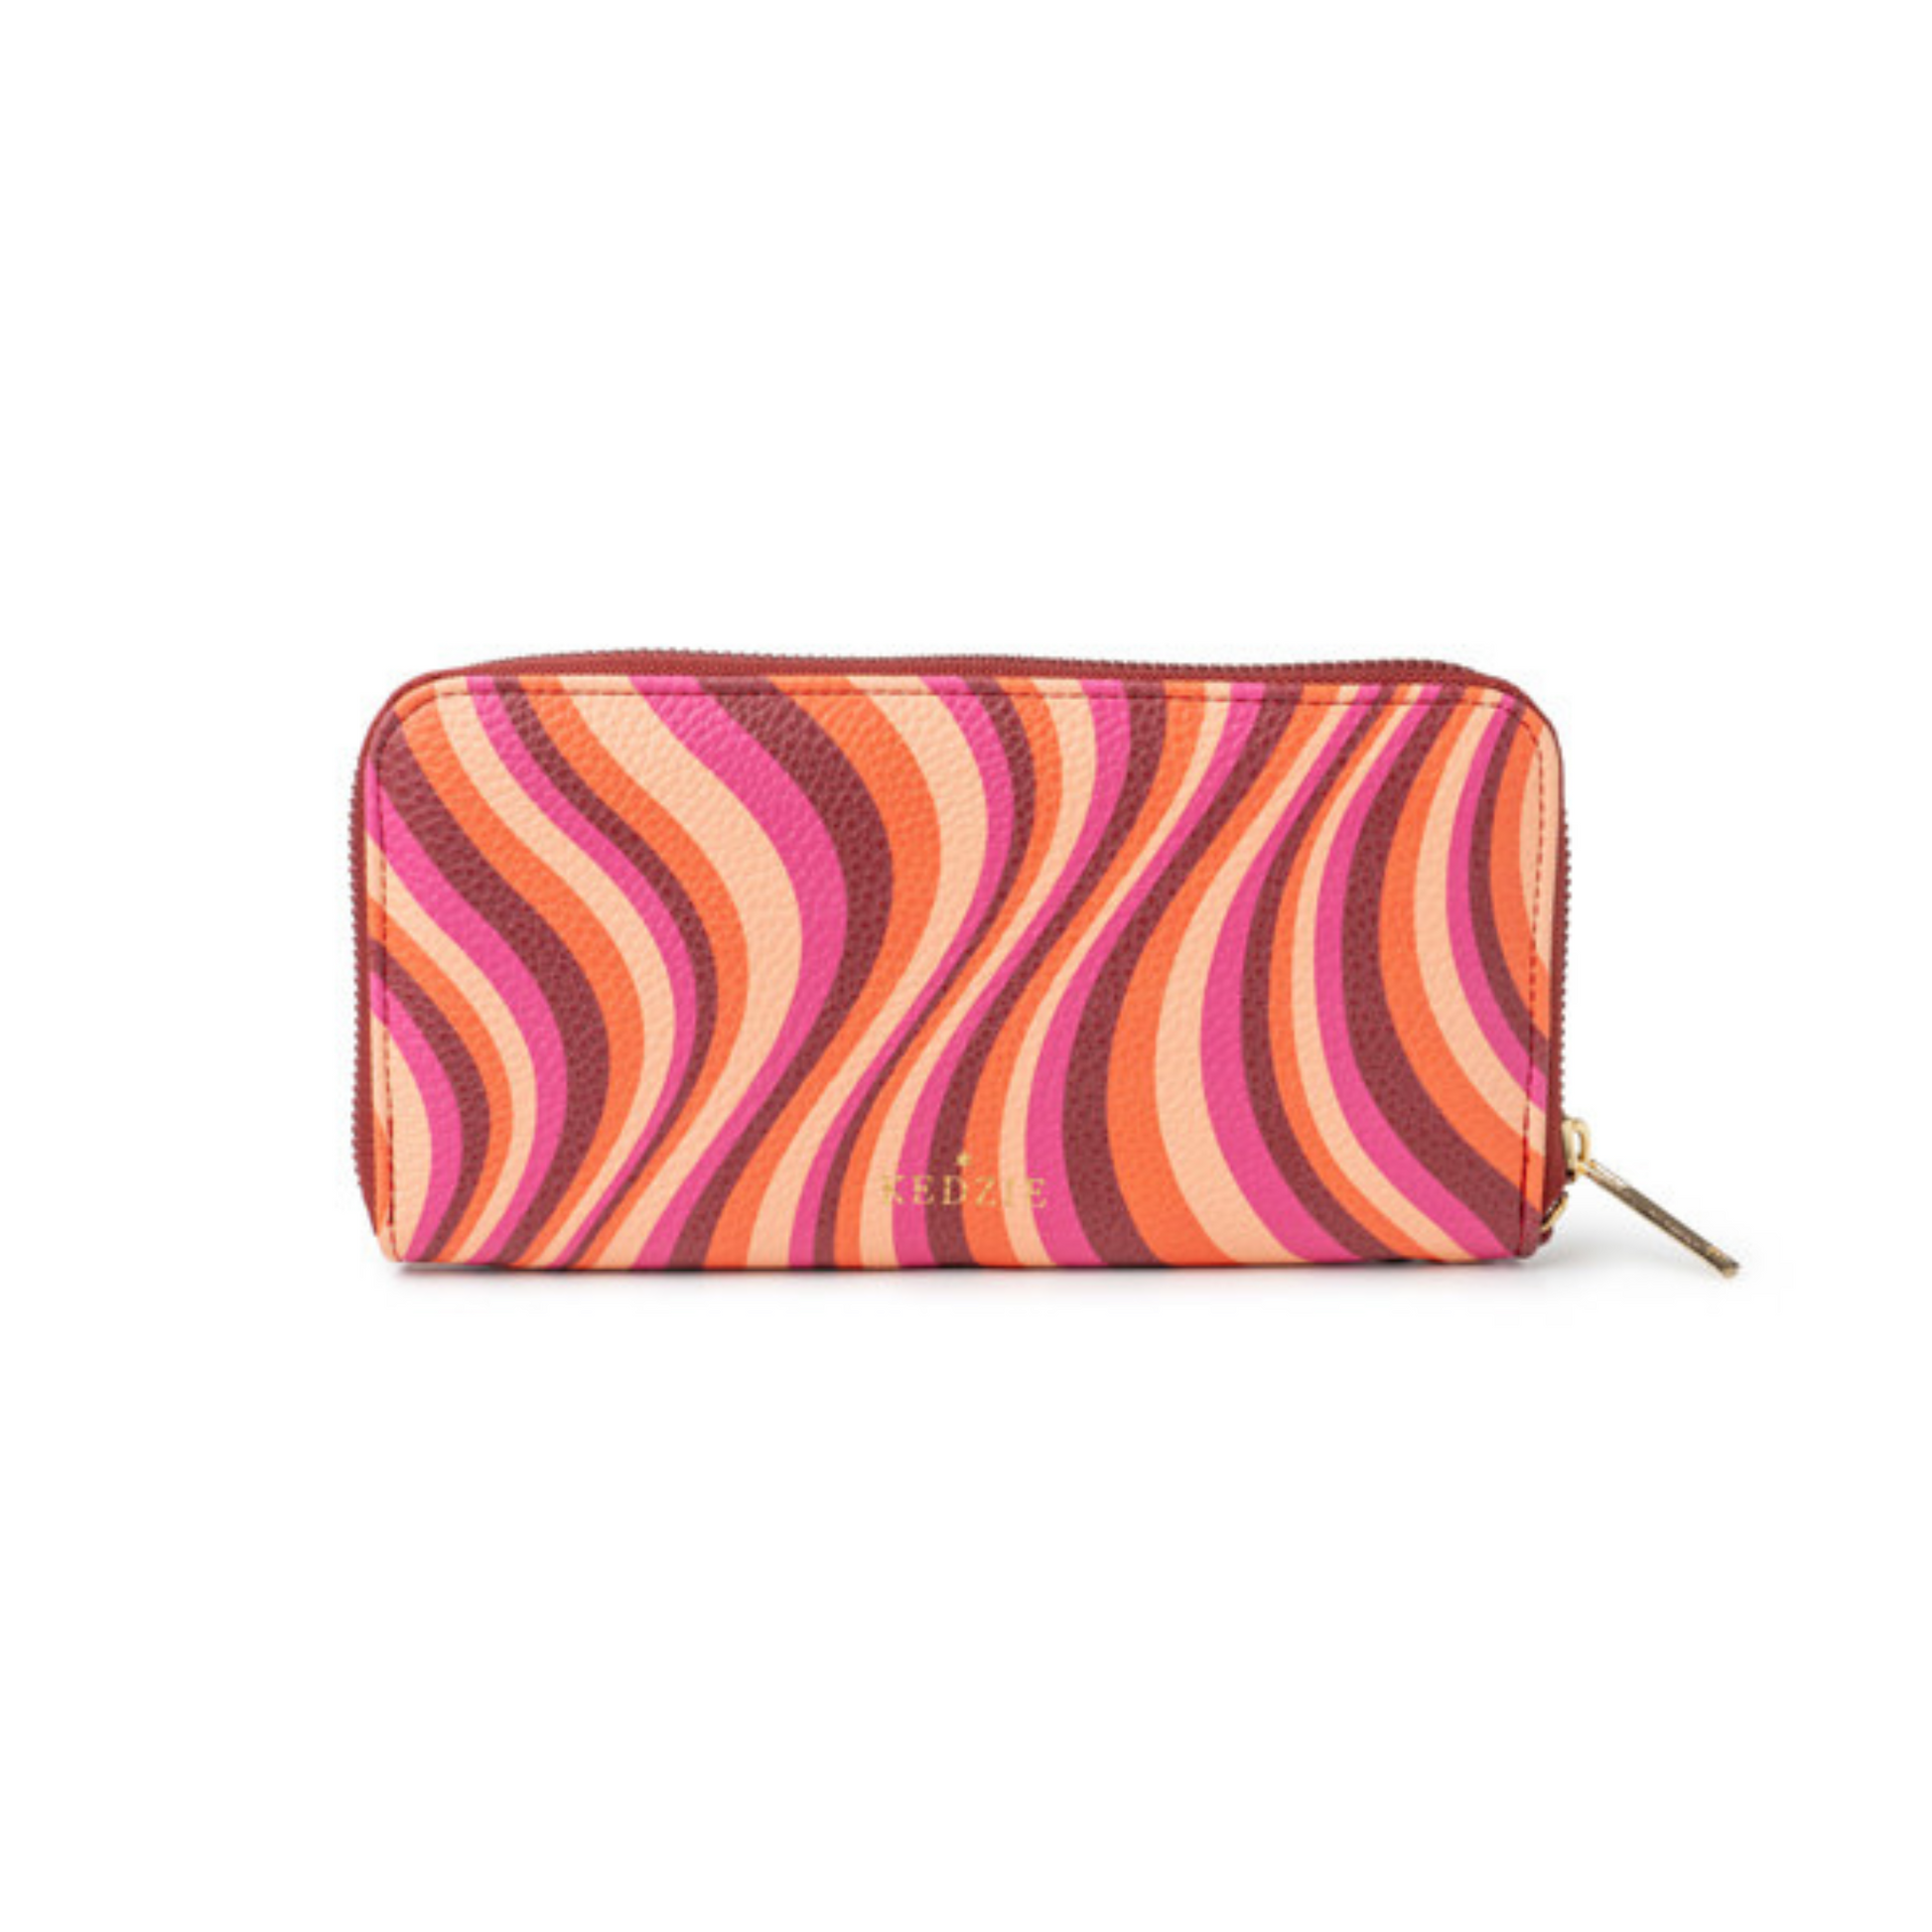 Pink Swirl Pattern style zip around clutch from Kedzie